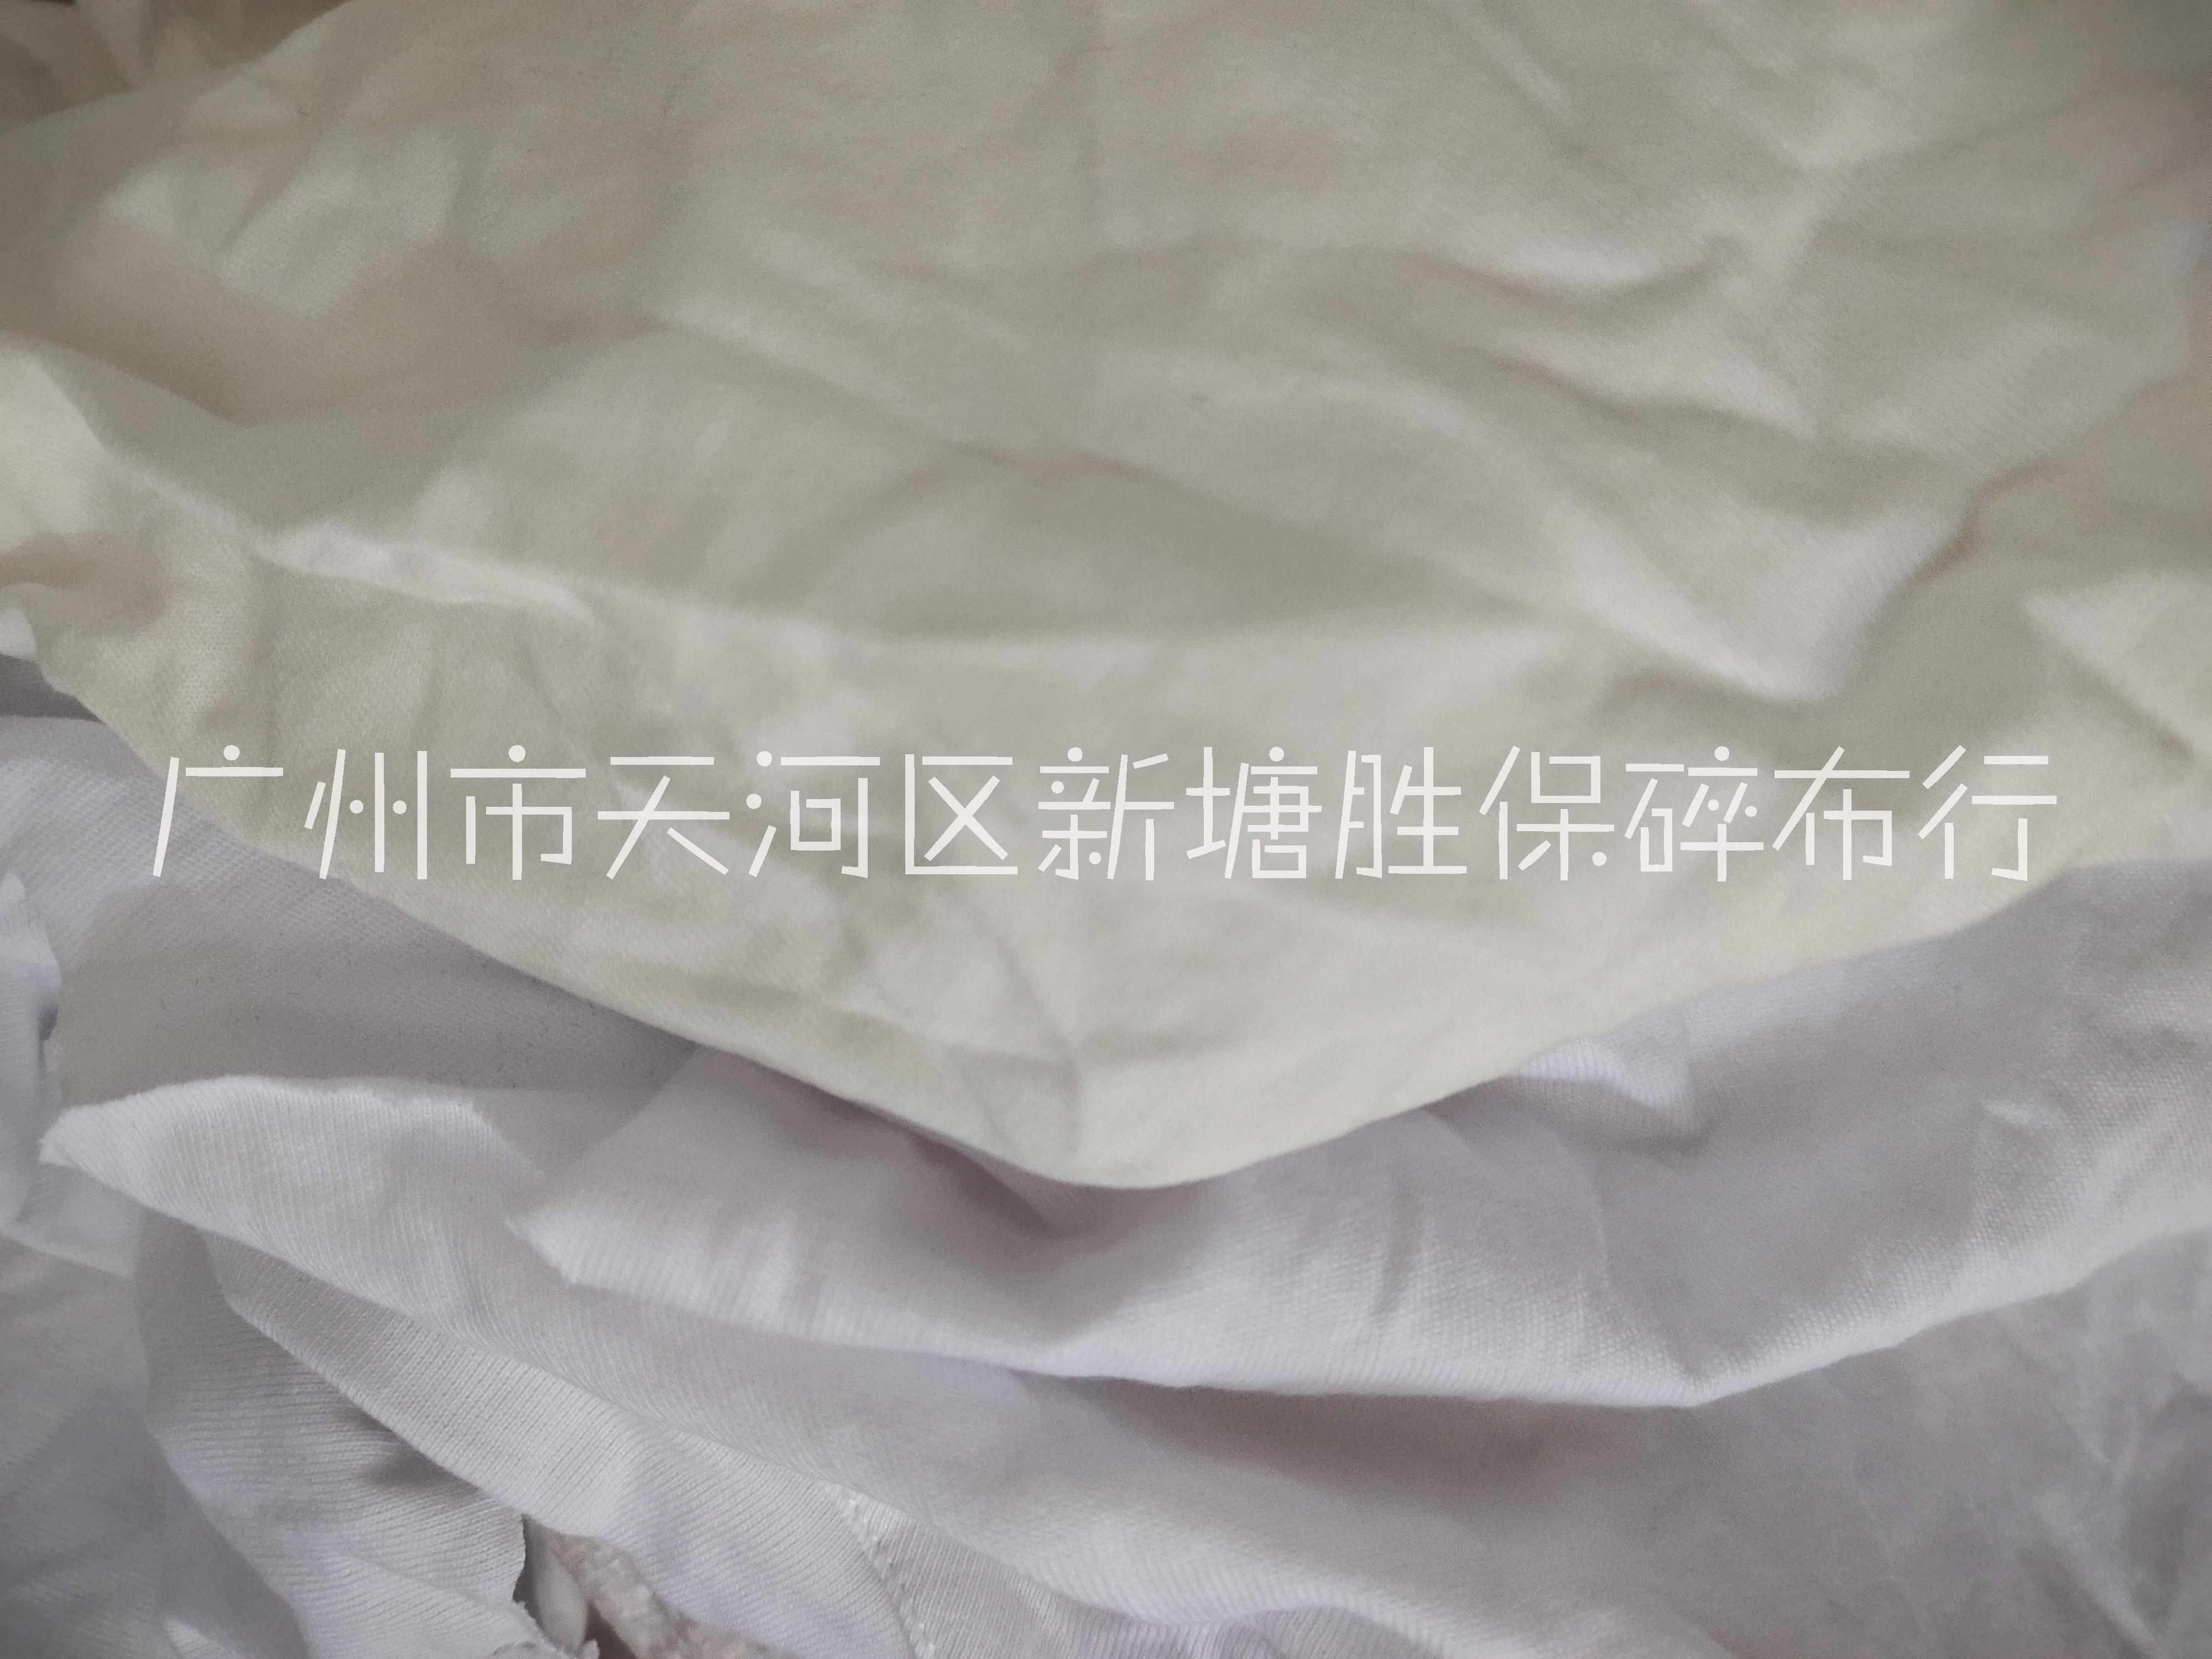 白色擦机布 棉碎布 工业擦油布  擦试布  工业抹布 擦机抹布 棉抹布